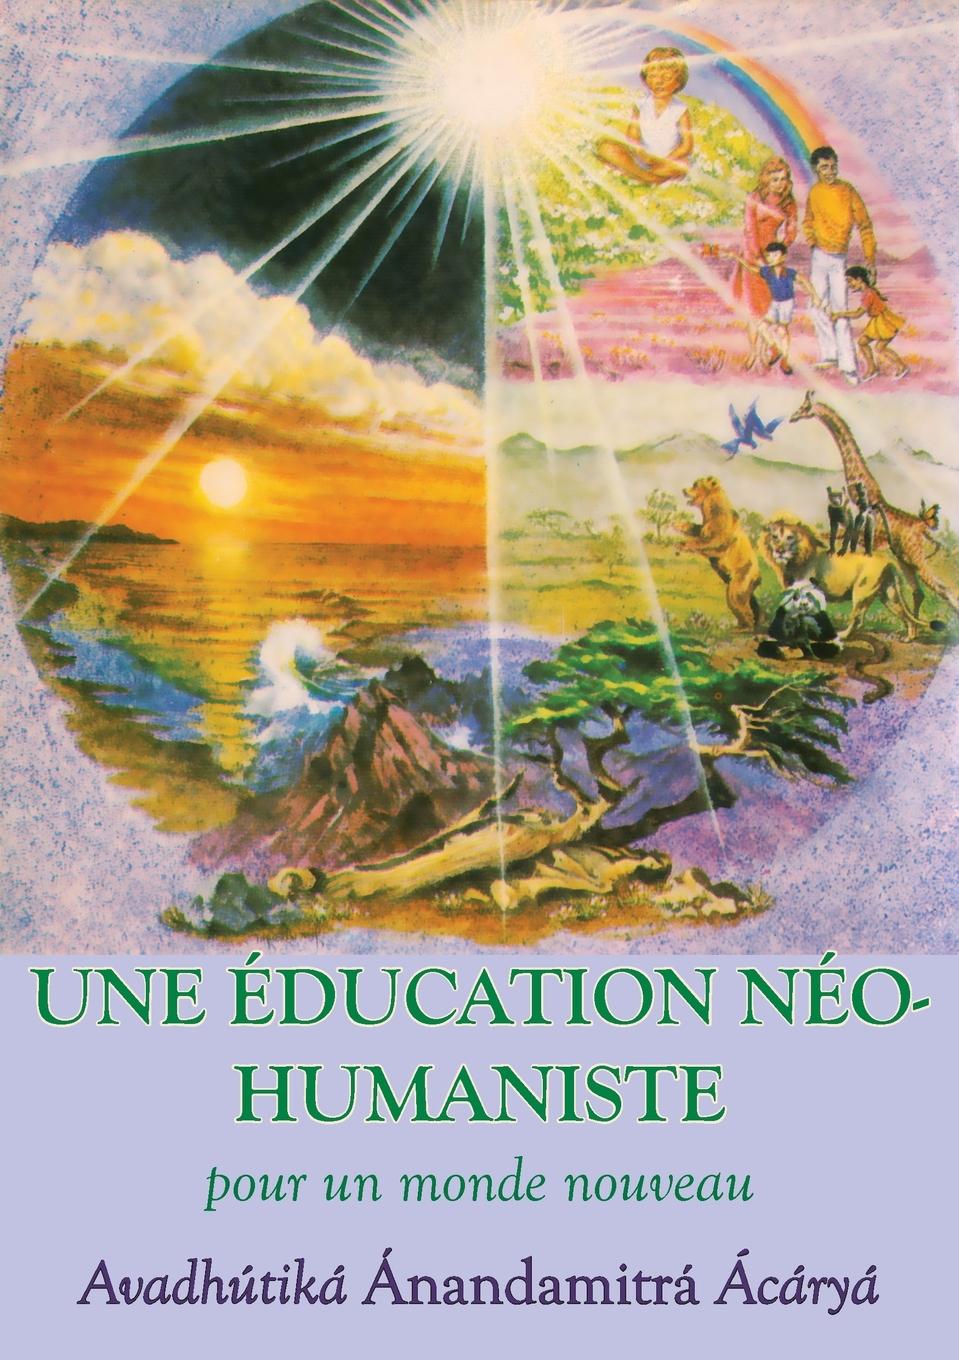 Carte Education neohumaniste, s appuyant sur la sagesse du yoga et les sciences de l education Susan Andrews